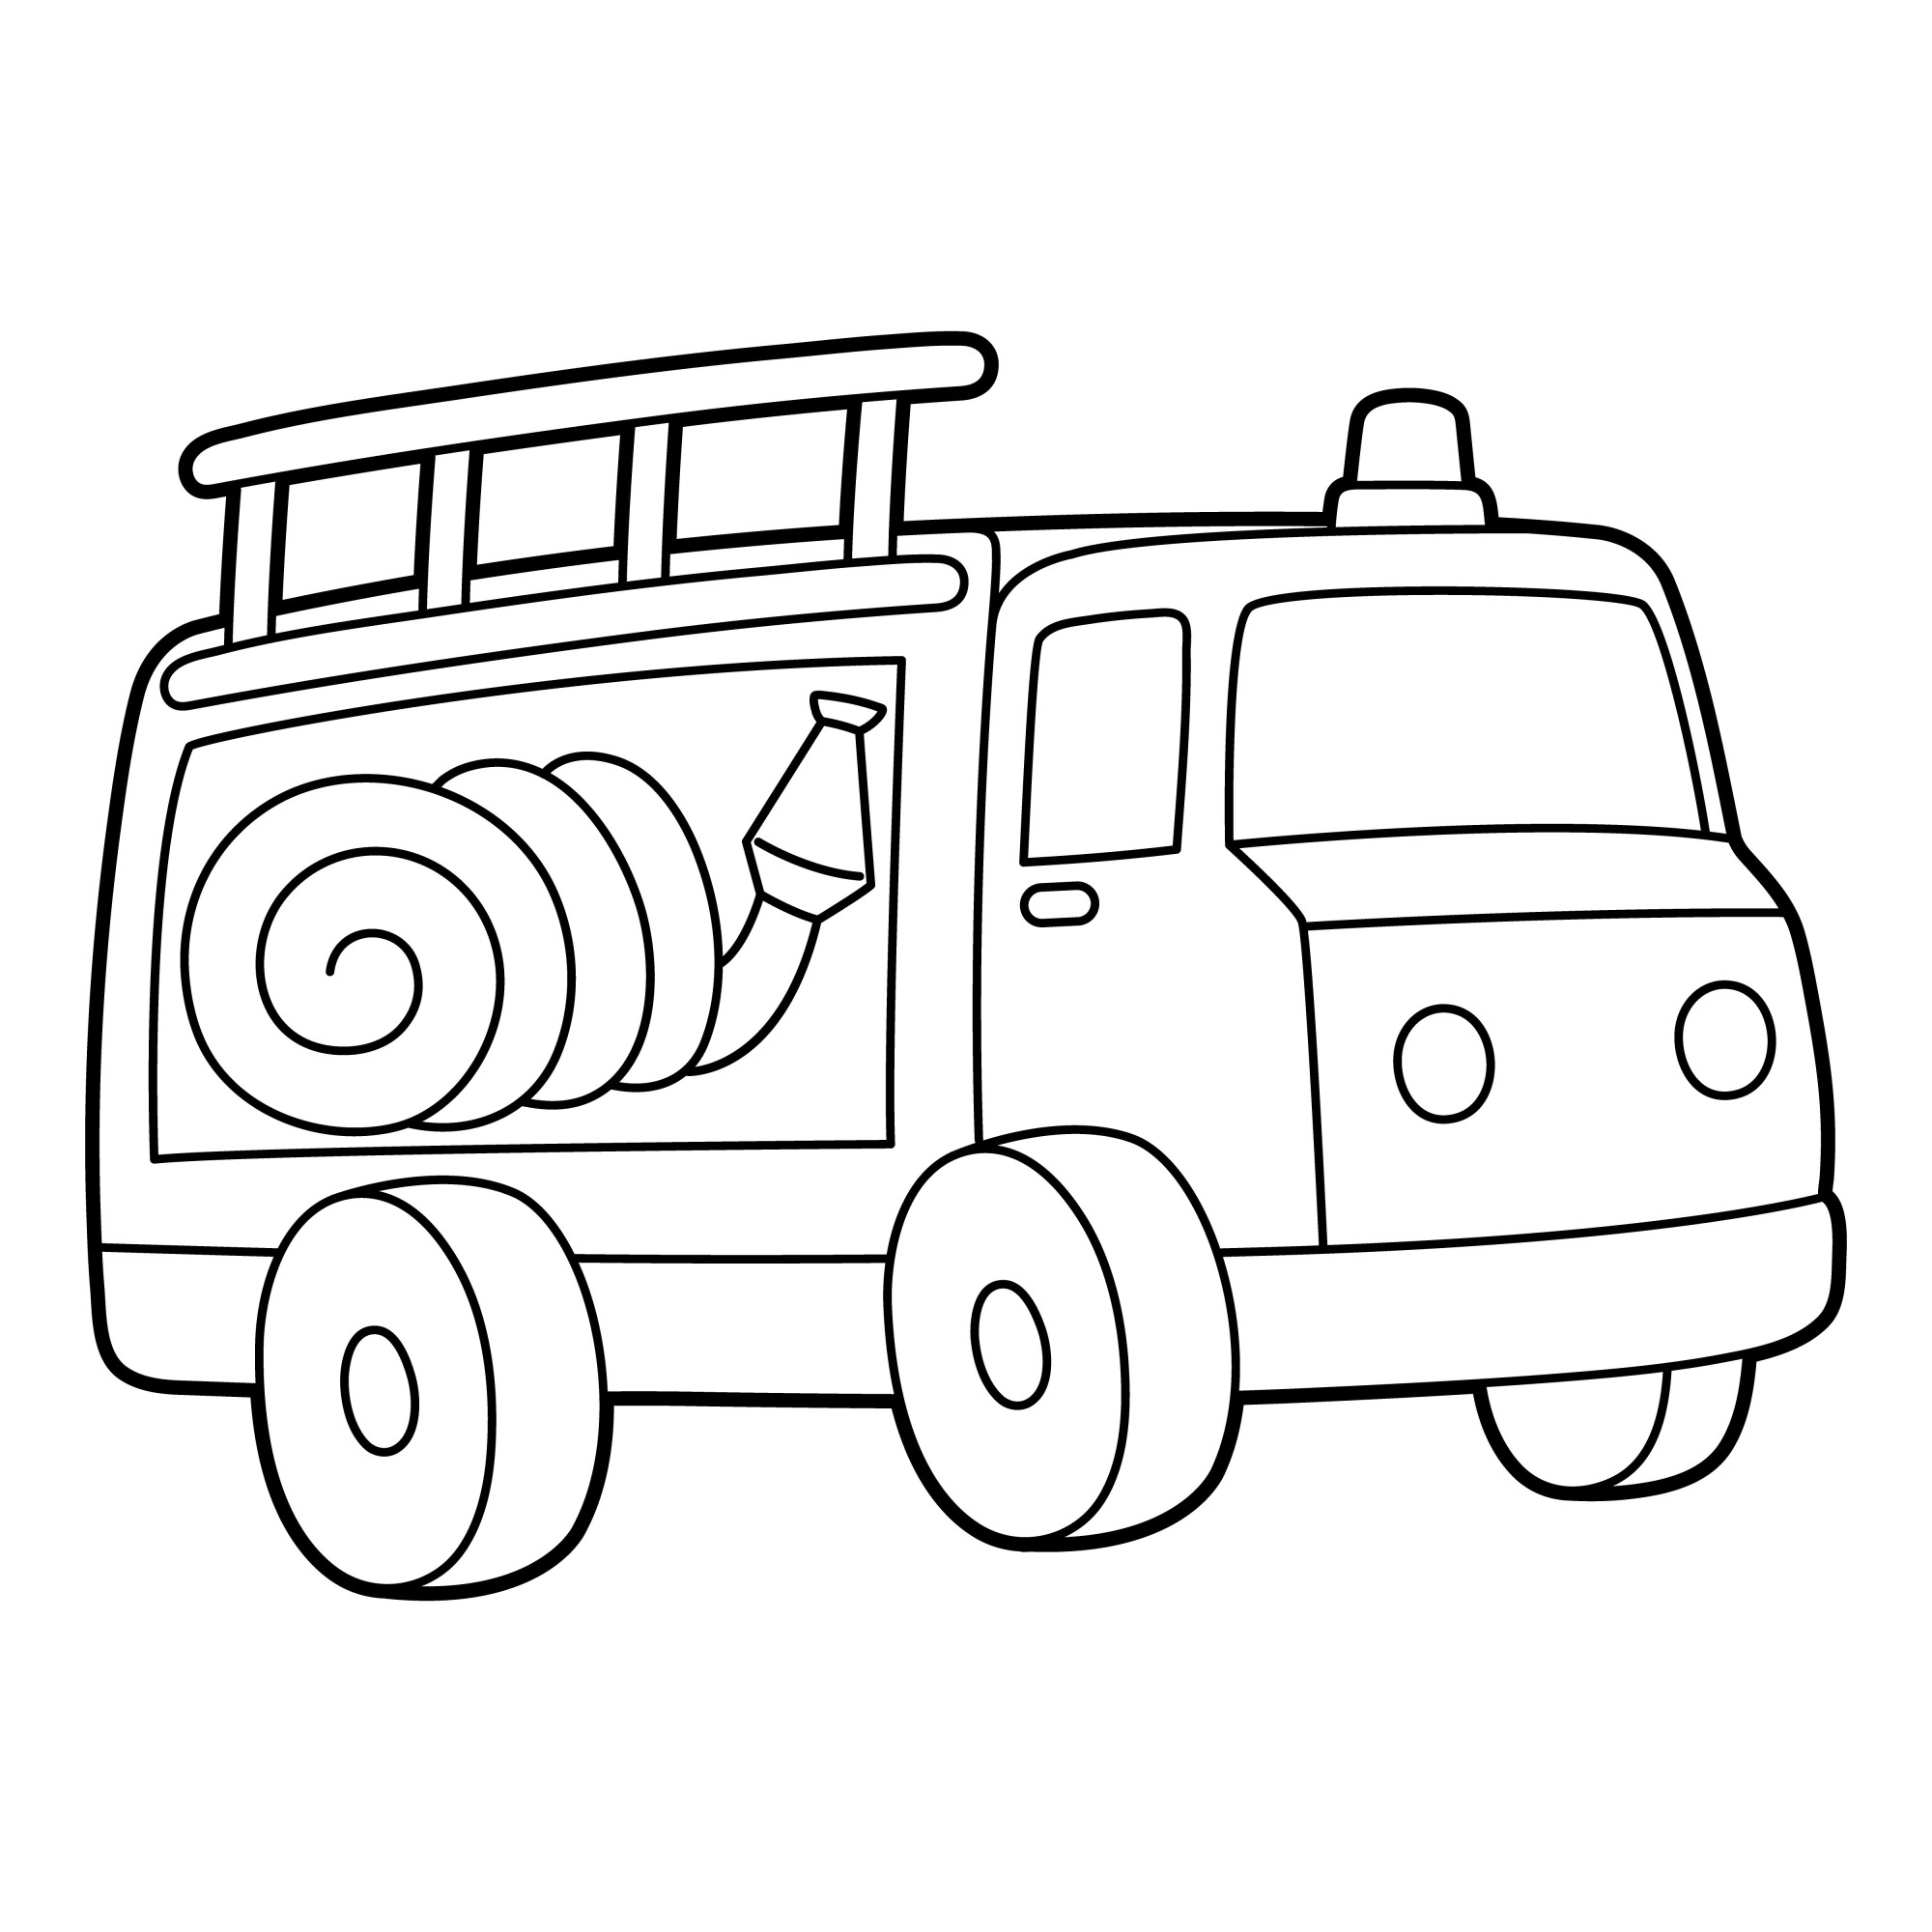 Раскраска для детей: пожарная машина с пожарным рукавом